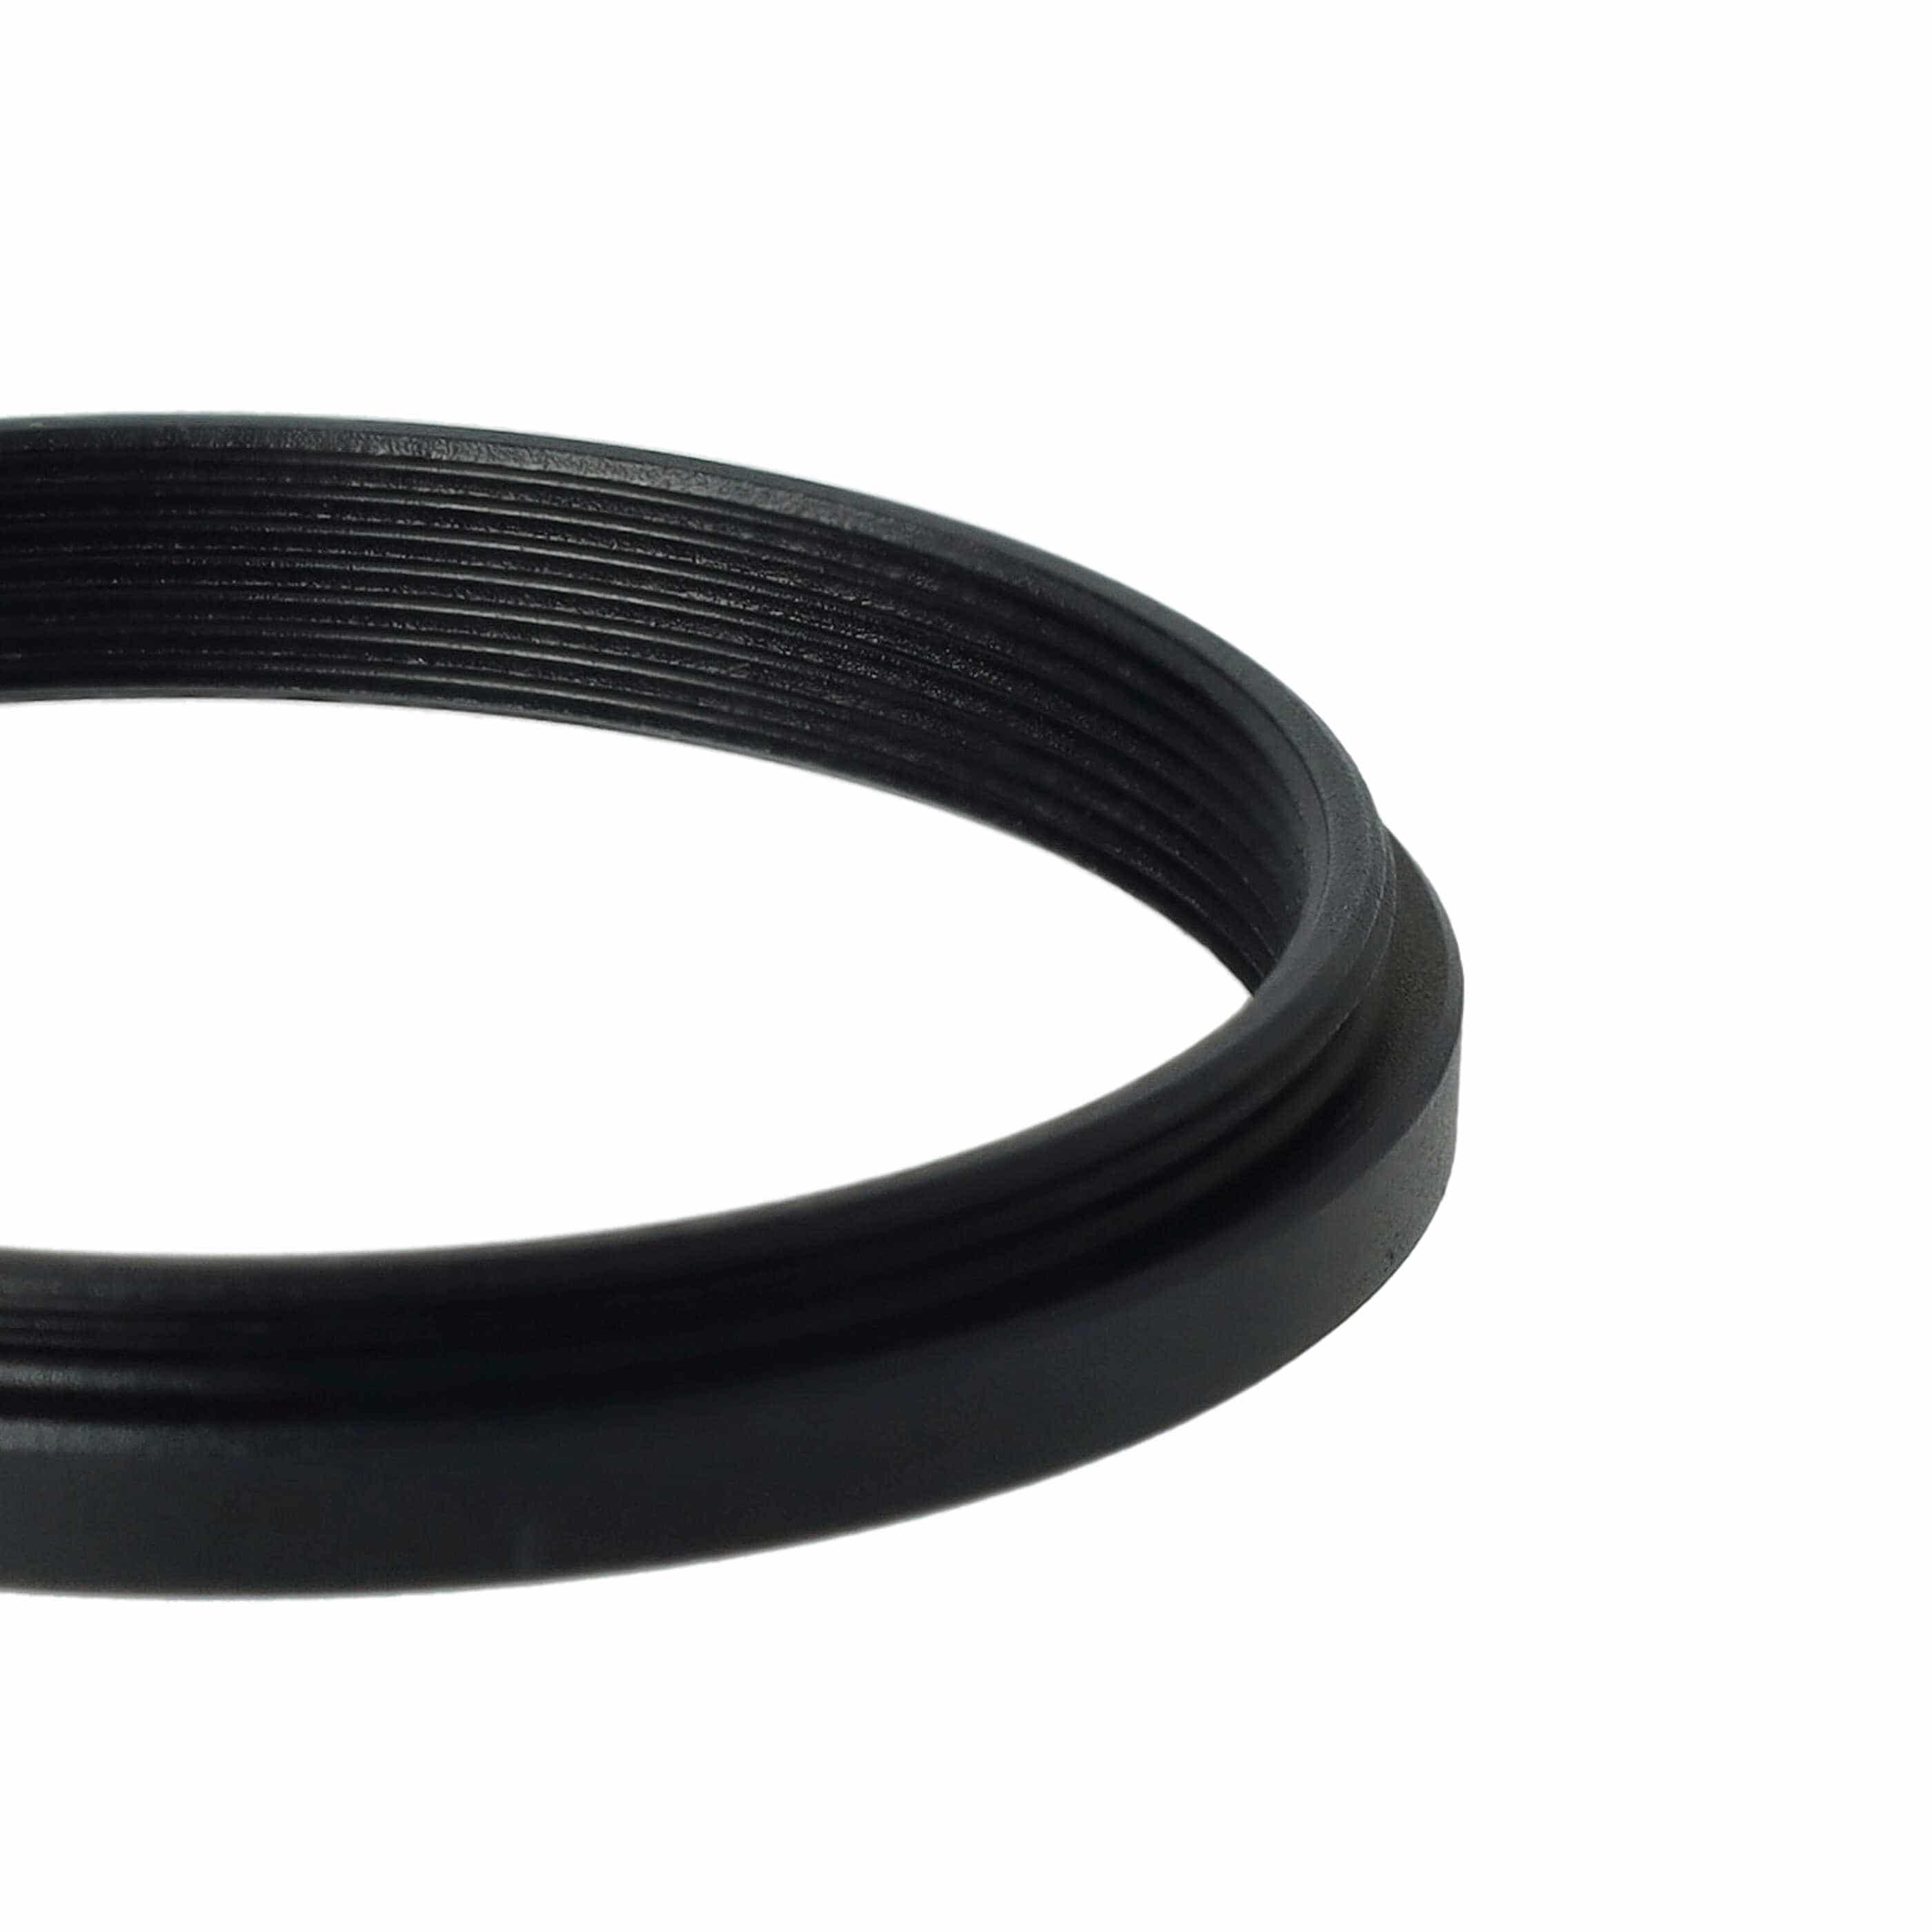 Step-Down-Ring Adapter von 46 mm auf 43 mm passend für Kamera Objektiv - Filteradapter, Metall, schwarz